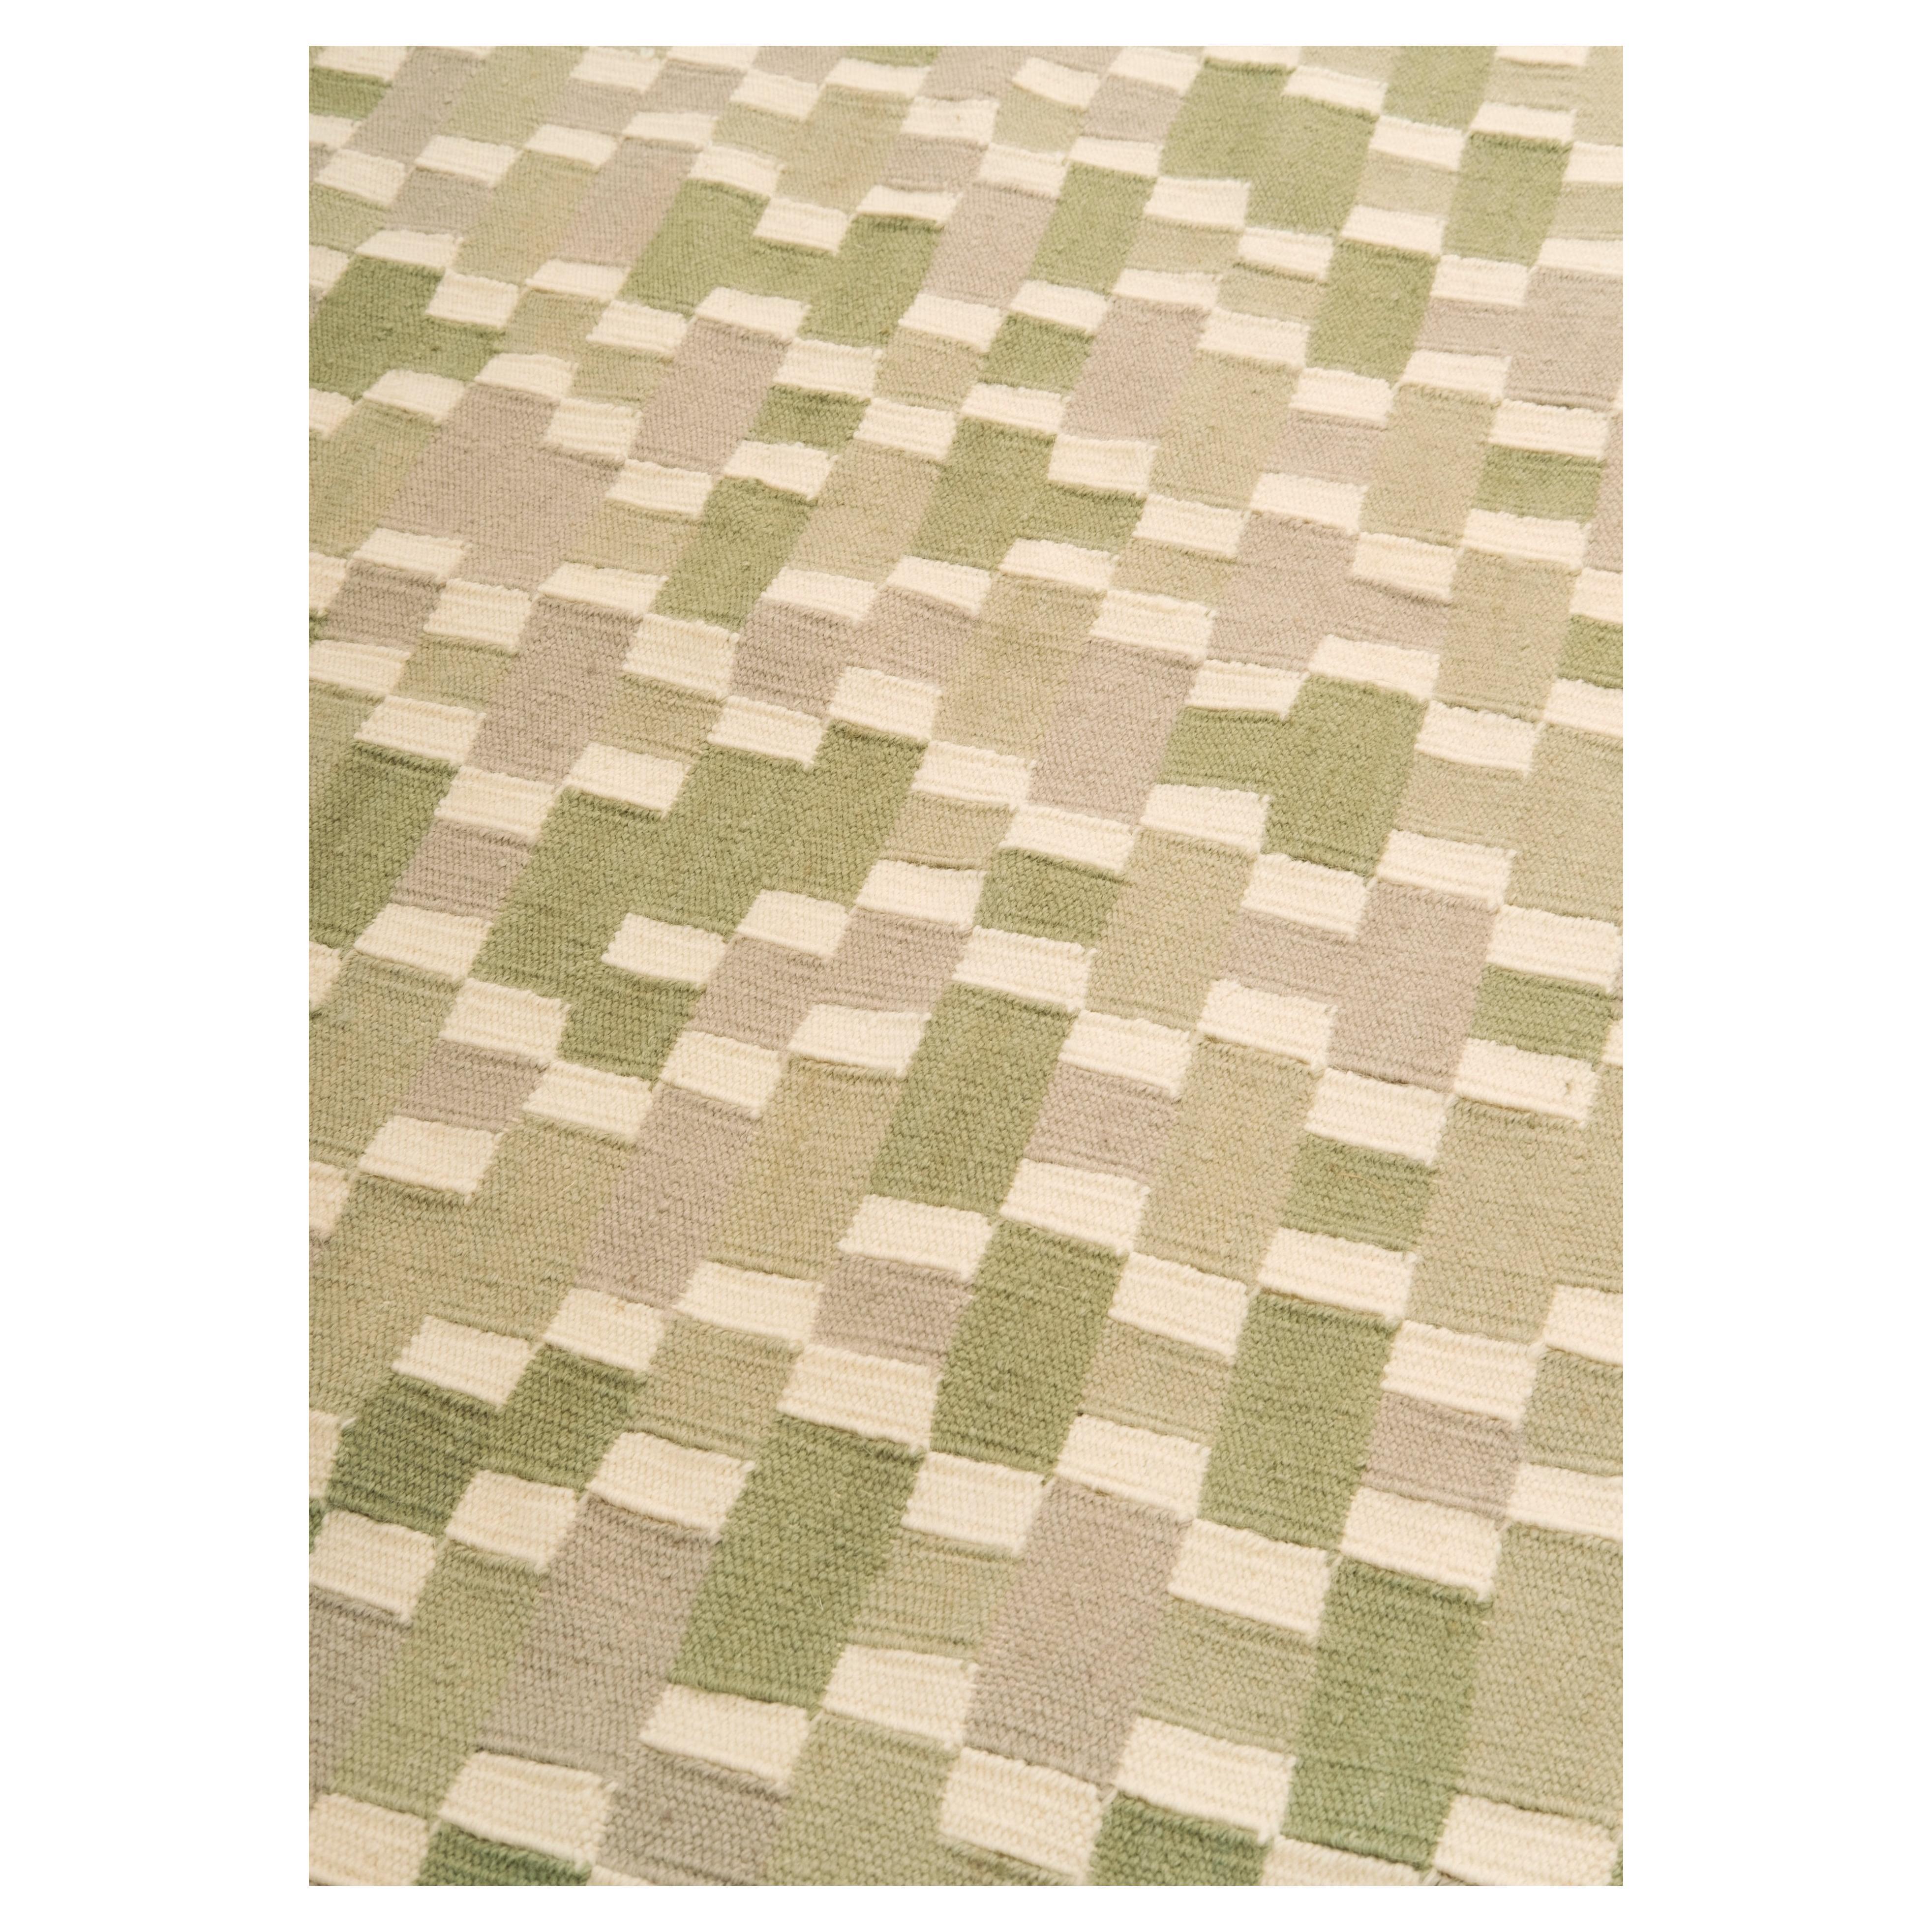 Tempo Cinque - Grün

Dieser Kelimteppich ist leicht und atmungsaktiv.
Vorrätig, wurde einmal für ein Fotoshooting in einer Zeitschrift verwendet.

Wollgewebe mit geometrischen Motiven in einer raffinierten Farbkombination. Die Leichtigkeit eines